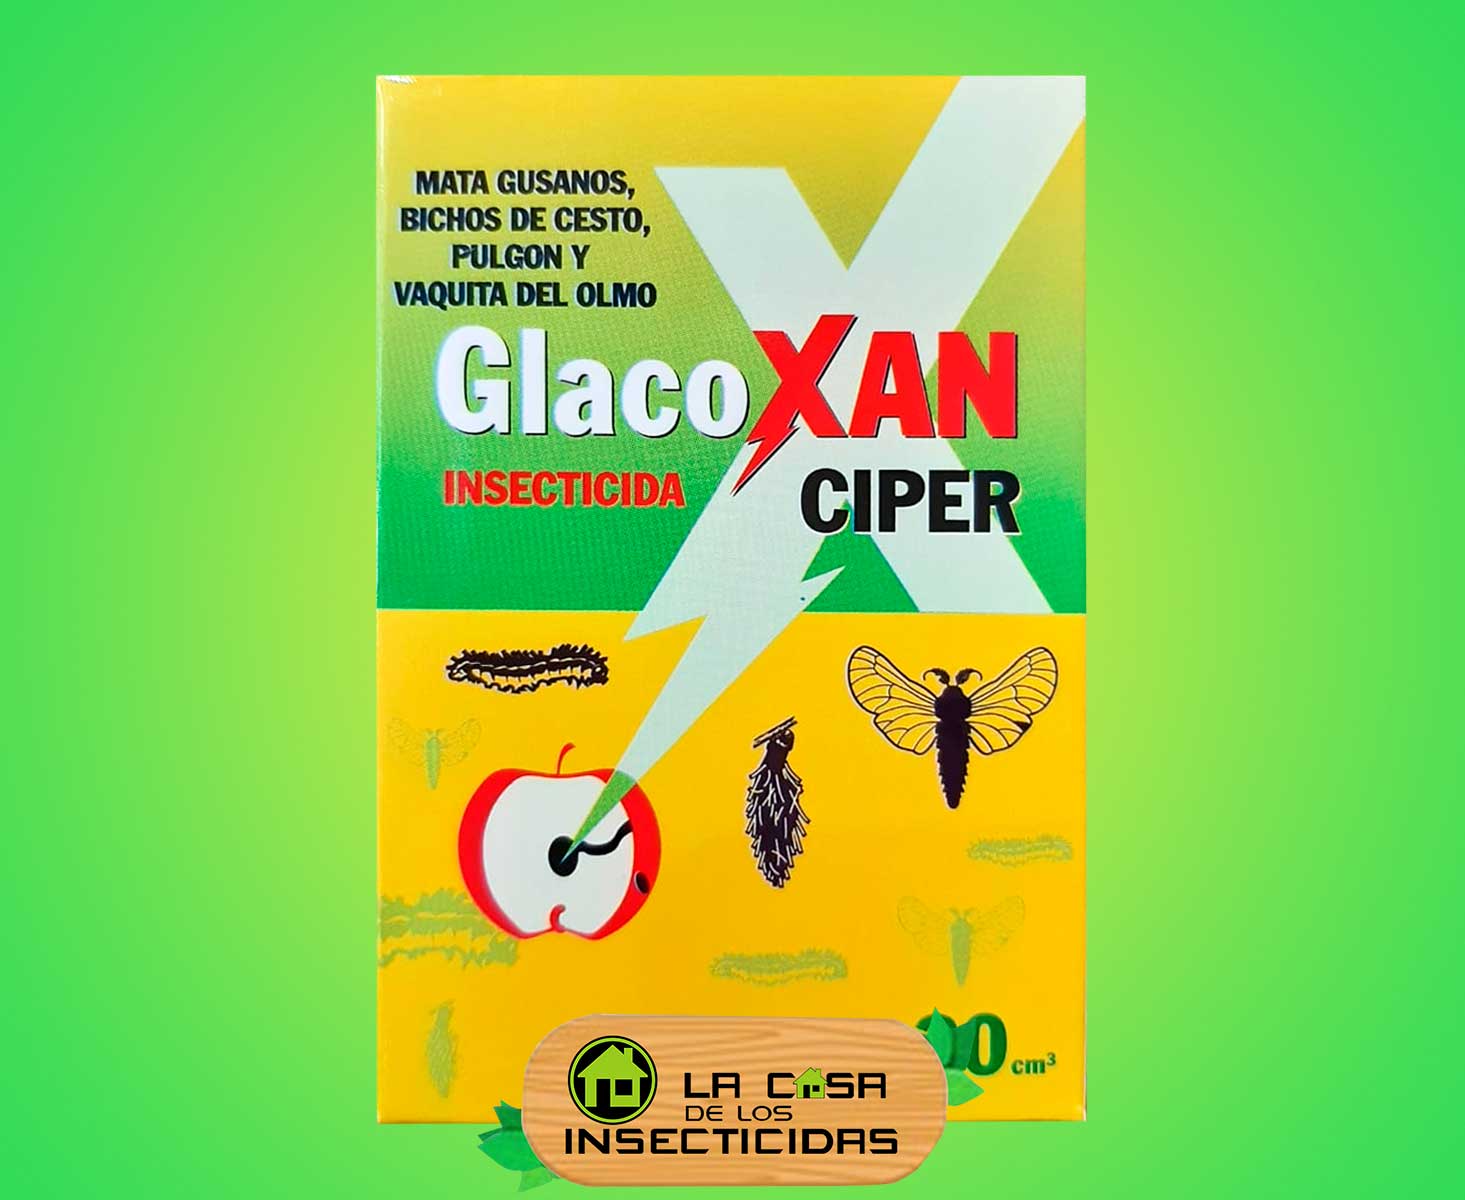 Glacoxan Ciper insecticida para plagas del jardín